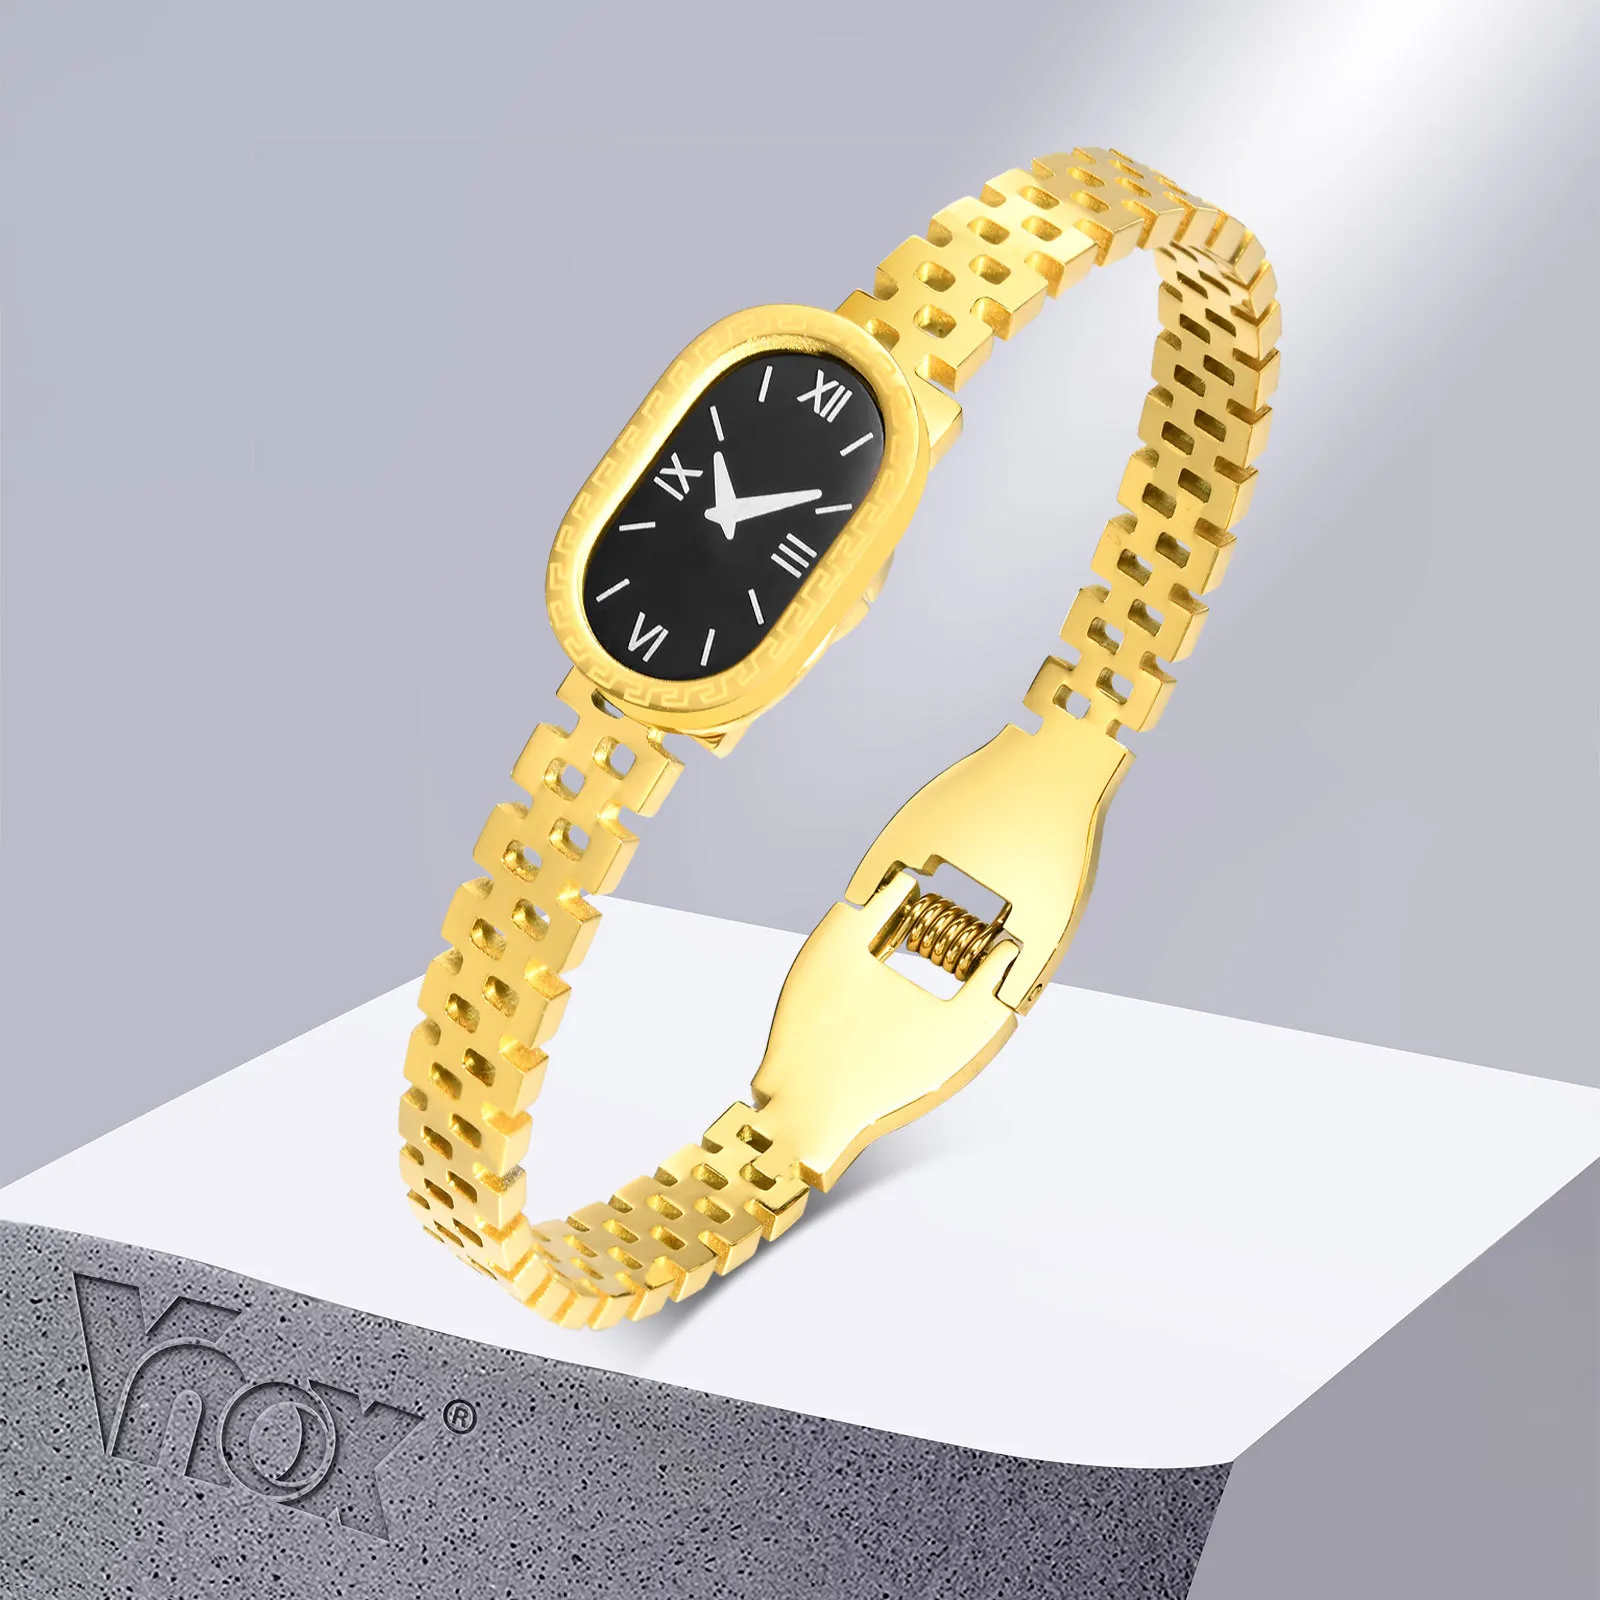 Braccialetto a forma di orologio Vnox per donna, bracciale in acciaio inossidabile Color oro, elegante cinturino da donna